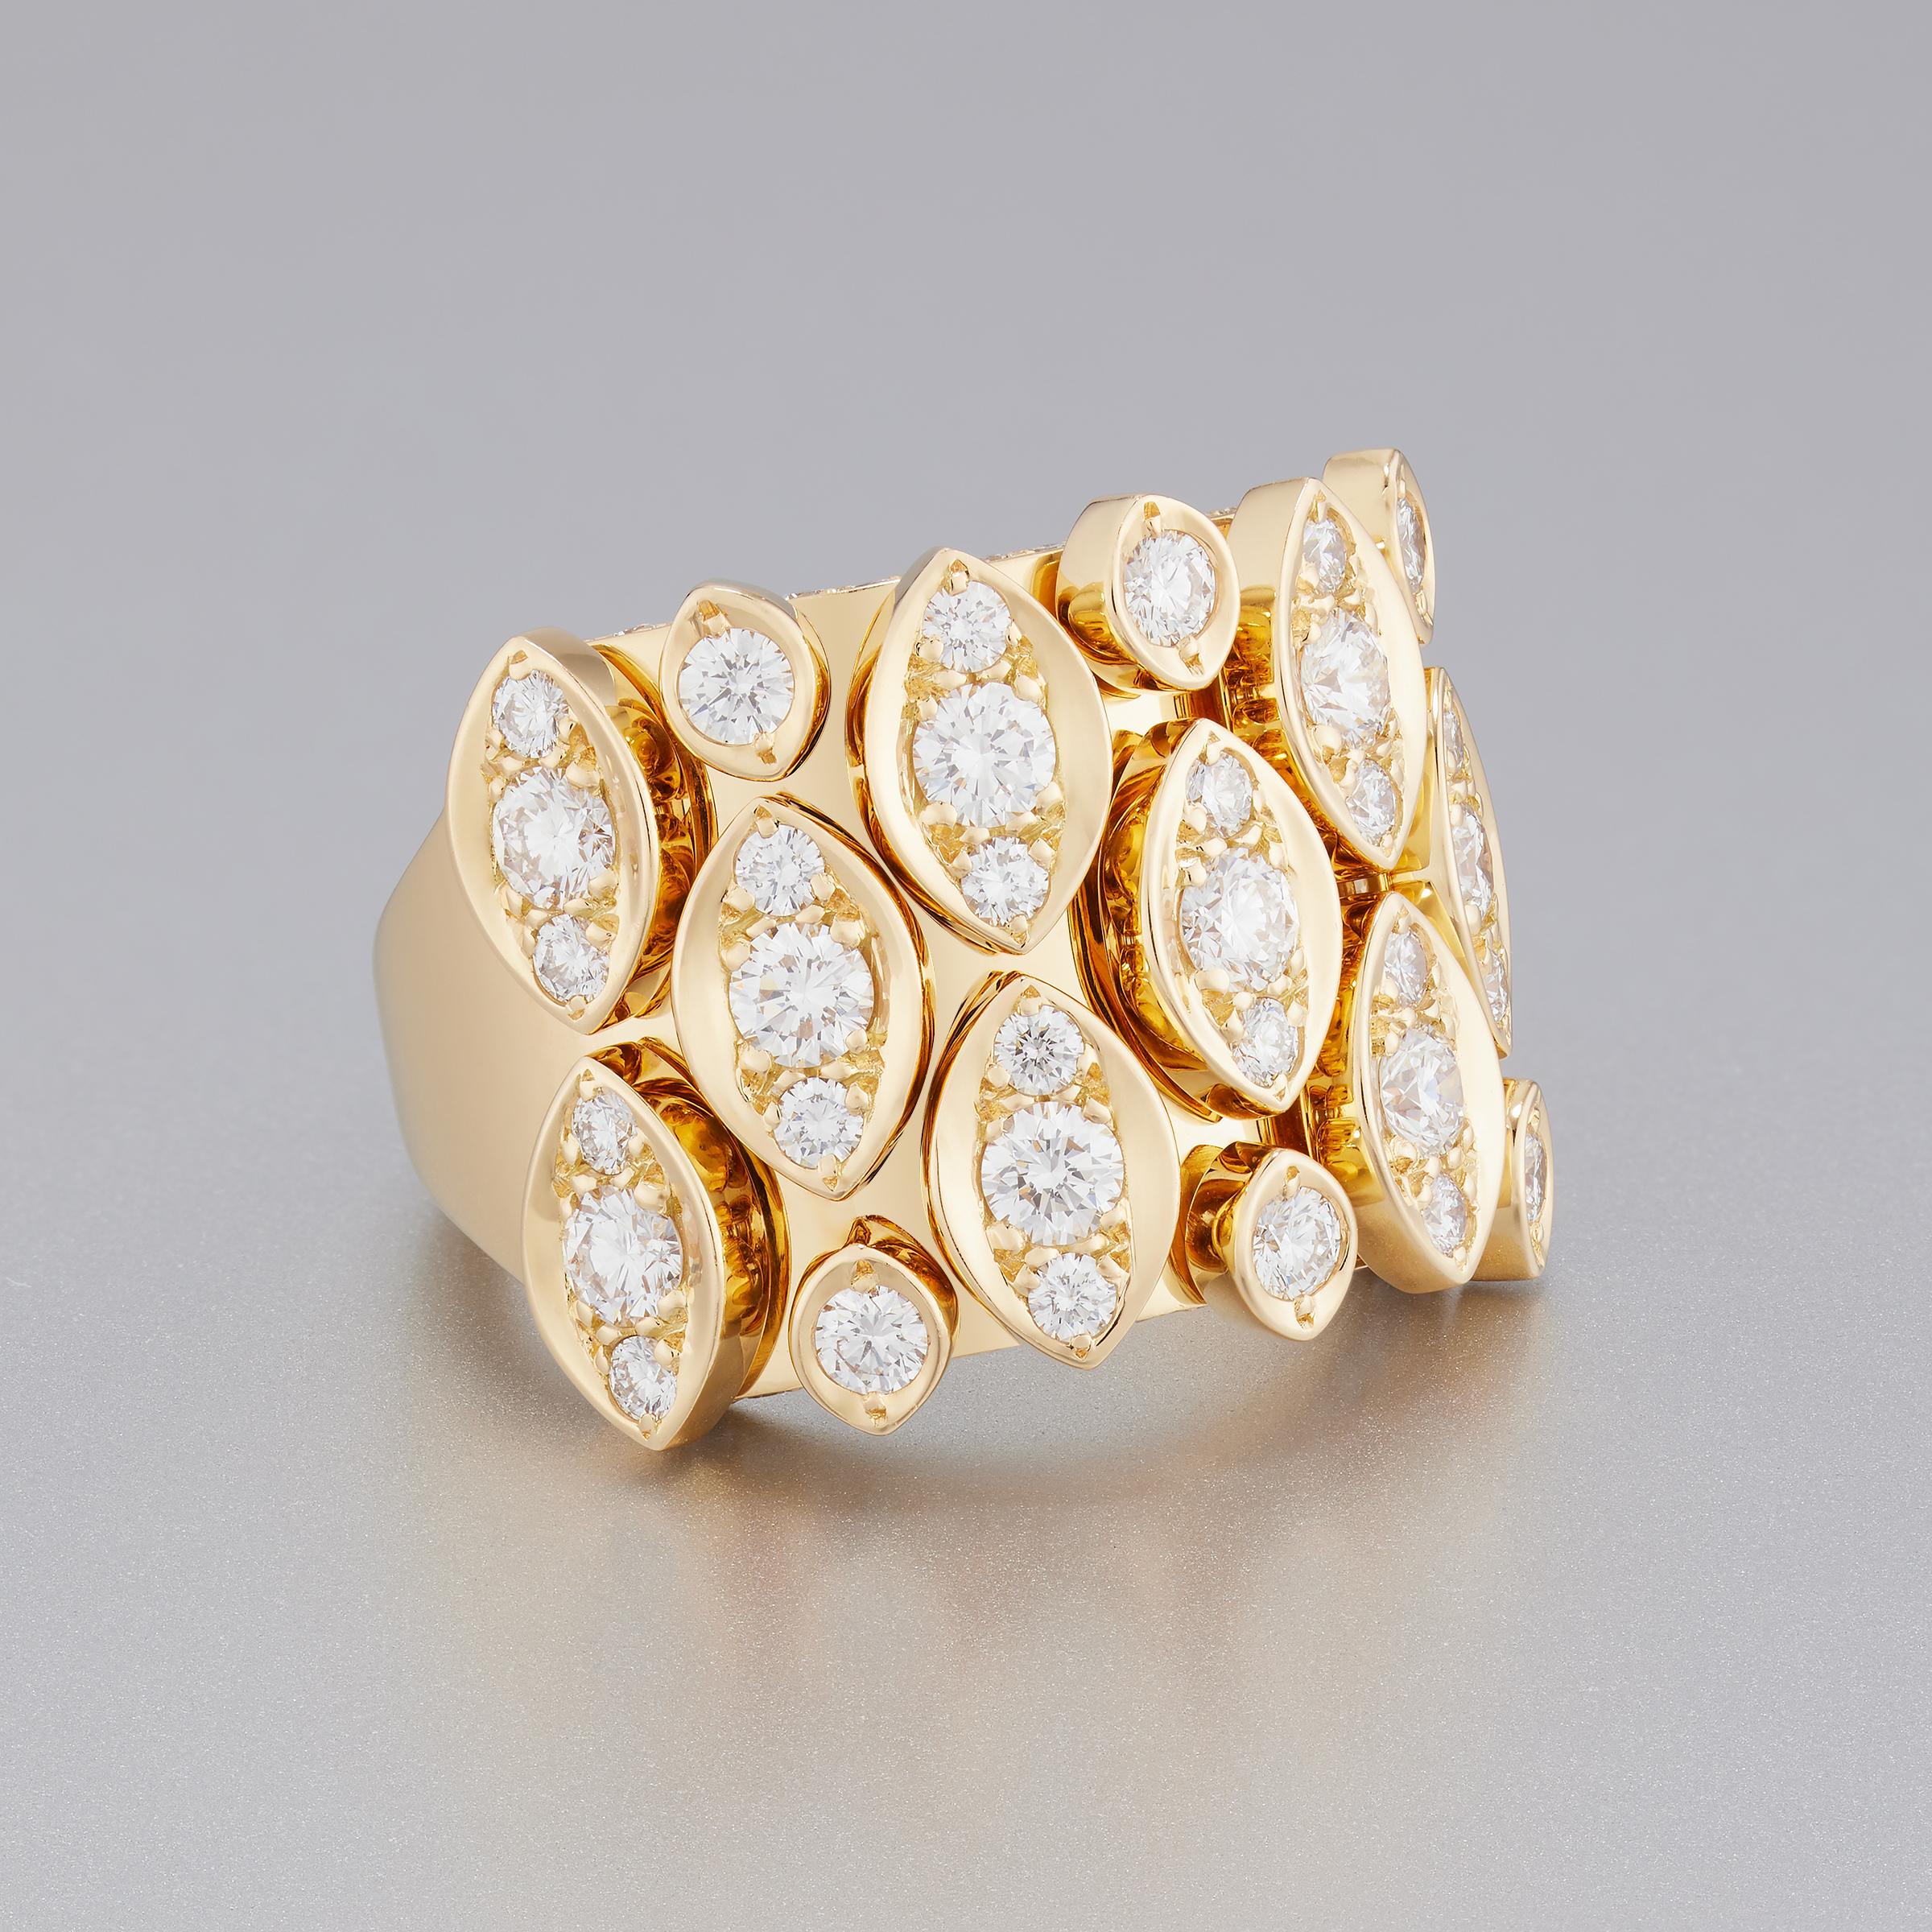 Der spektakuläre Cartier-Diamantring aus der Collection'S Diadea ist mit ca. 1,6 Karat Diamanten feinster Qualität (Farbe E-F und Reinheit VVS) in einer opulenten Fassung aus 18 Karat Gelbgold besetzt. Die runden Brillanten funkeln und schillern